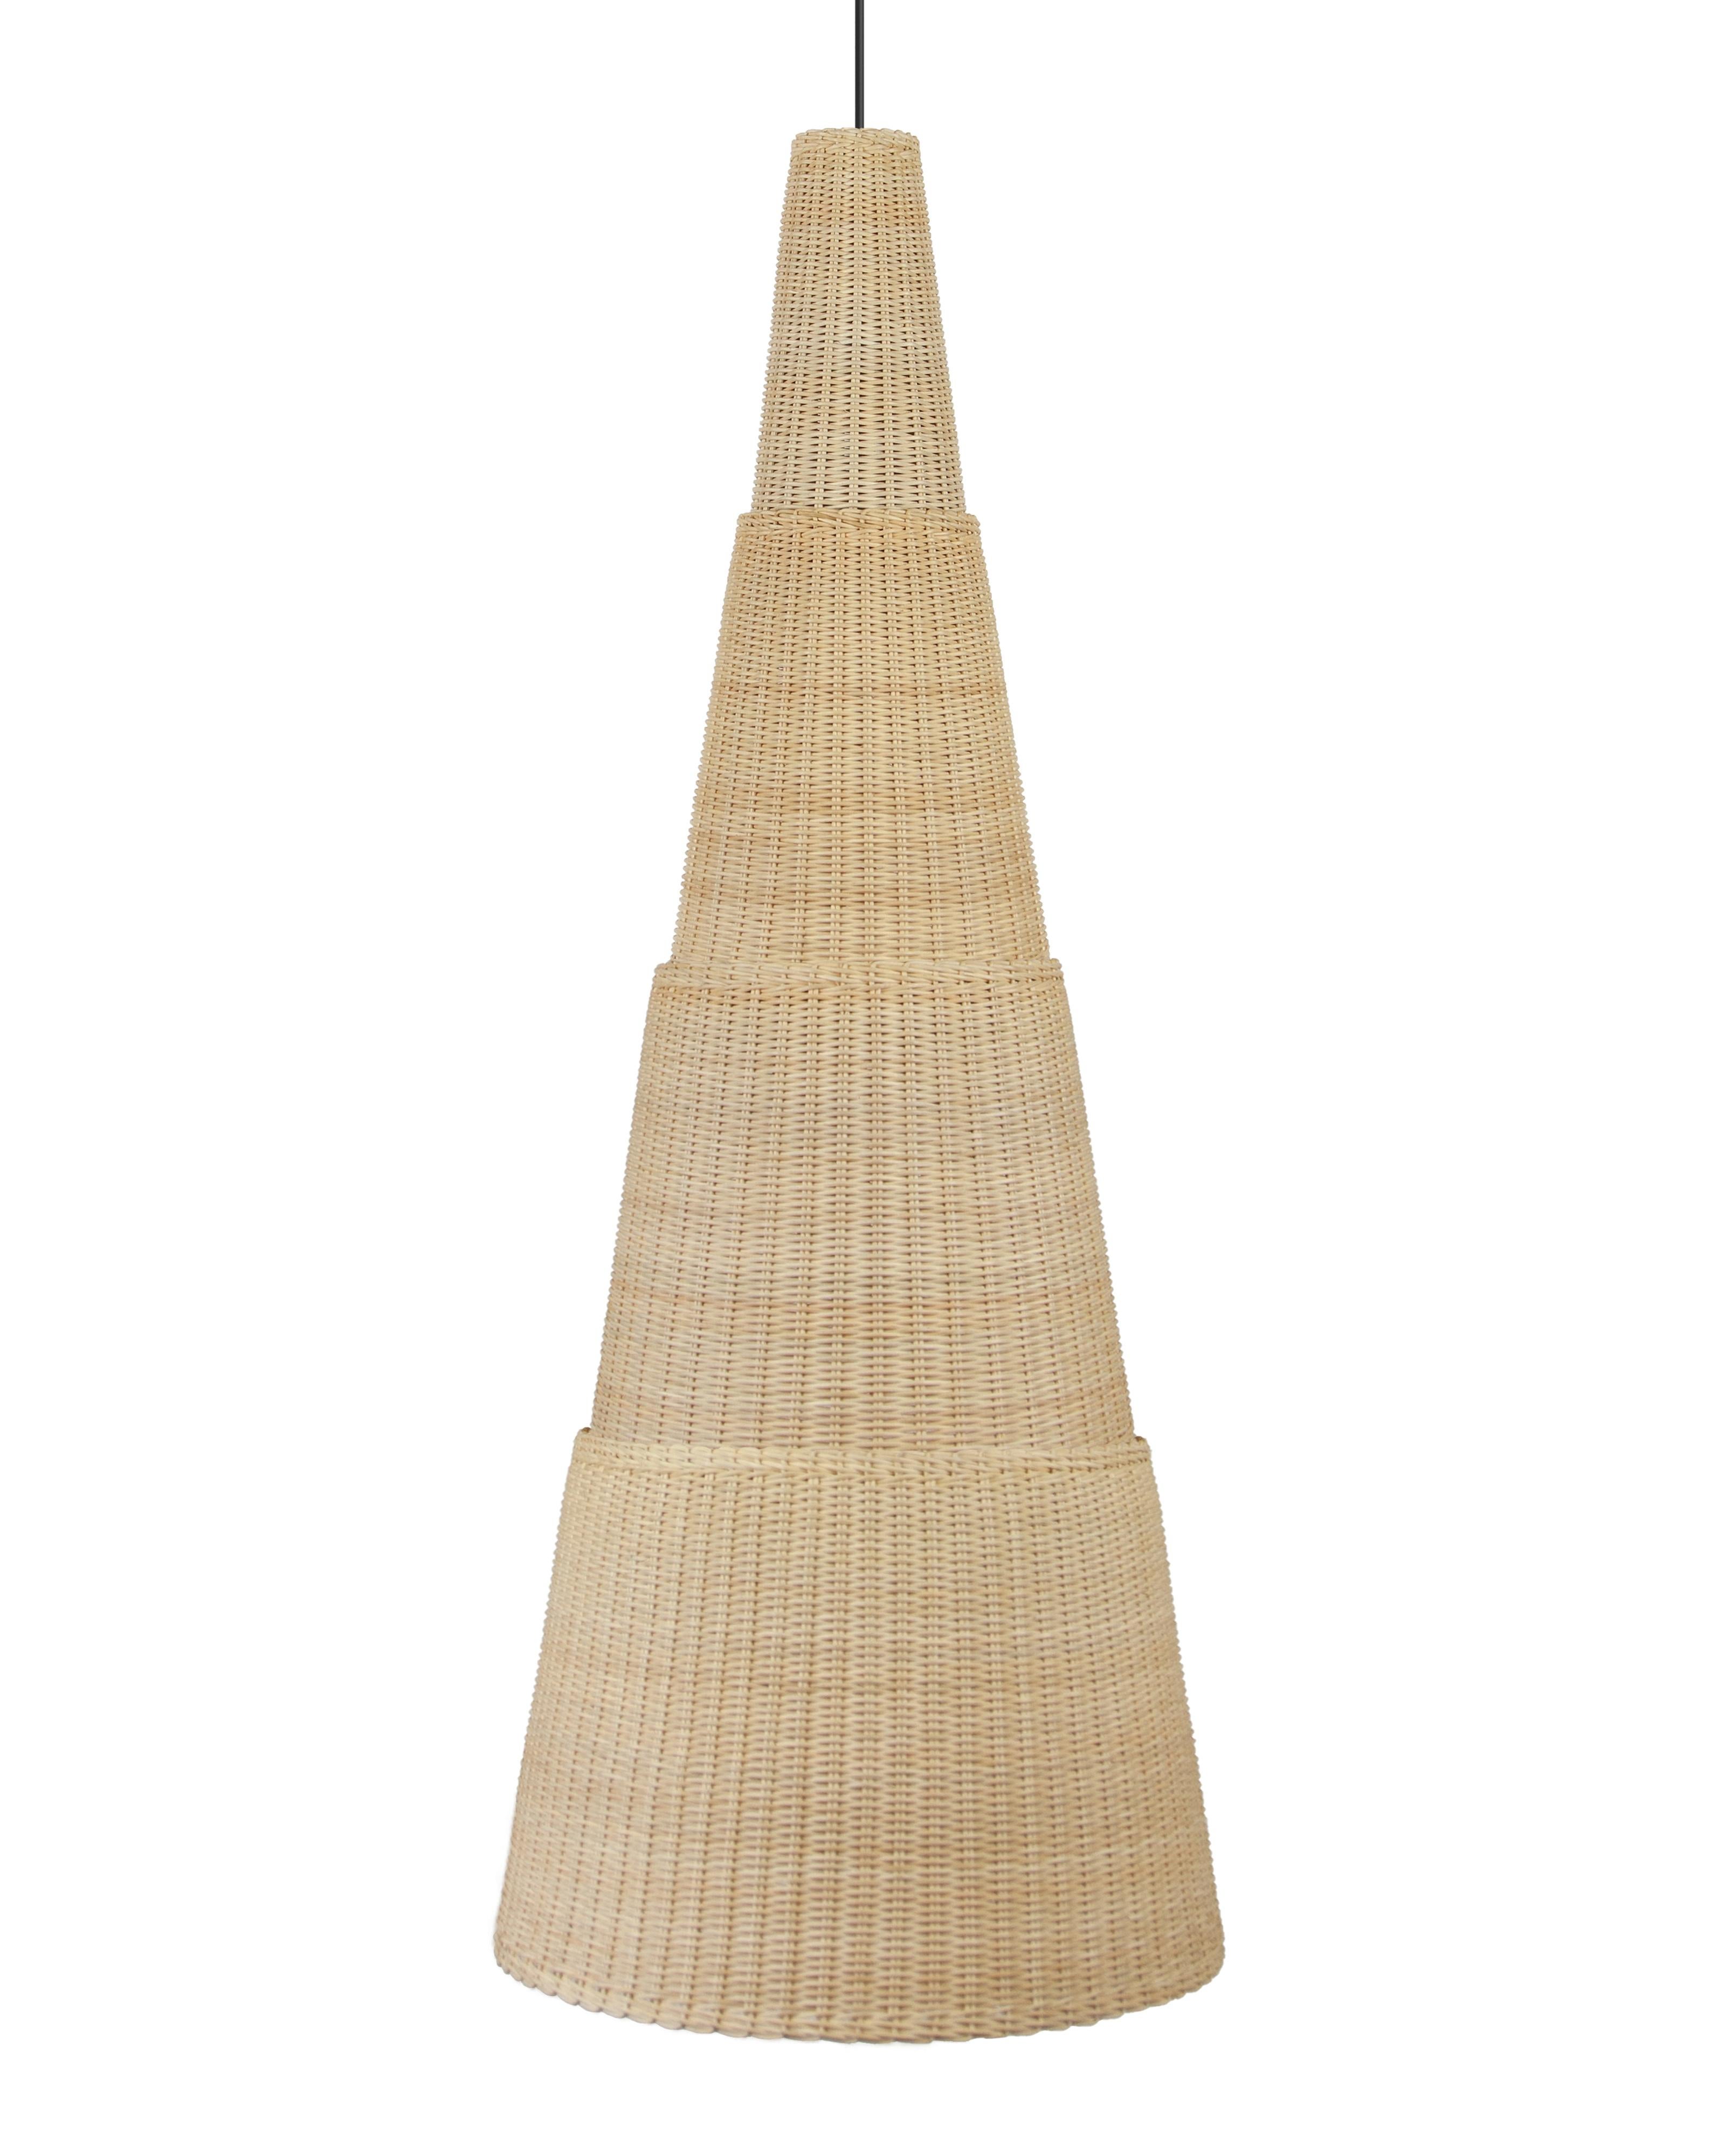 Beige (Natural) Bottega Intreccio Seia 140 Pendant in Bamboo Wicker, by Maurizio Bernabei